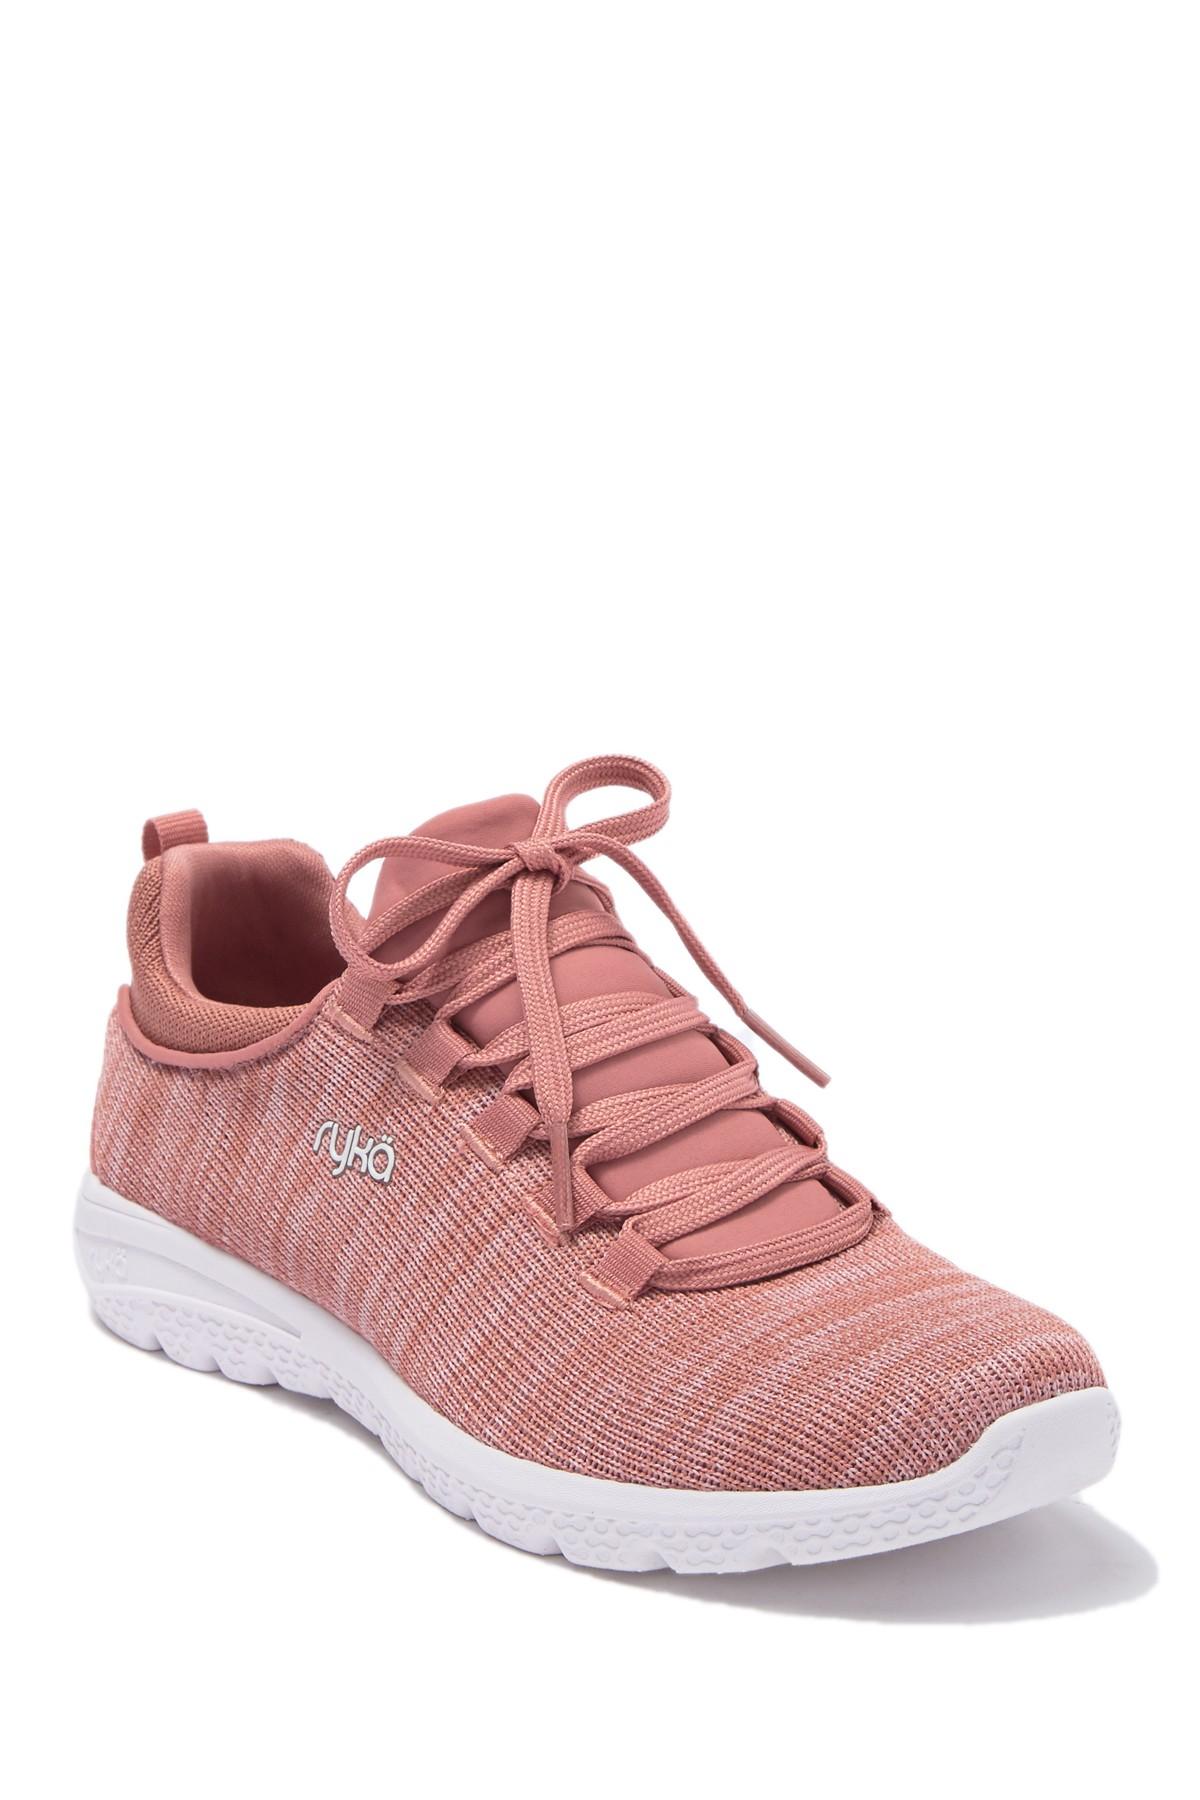 Ryka Hazel Sneaker in Pink - Lyst